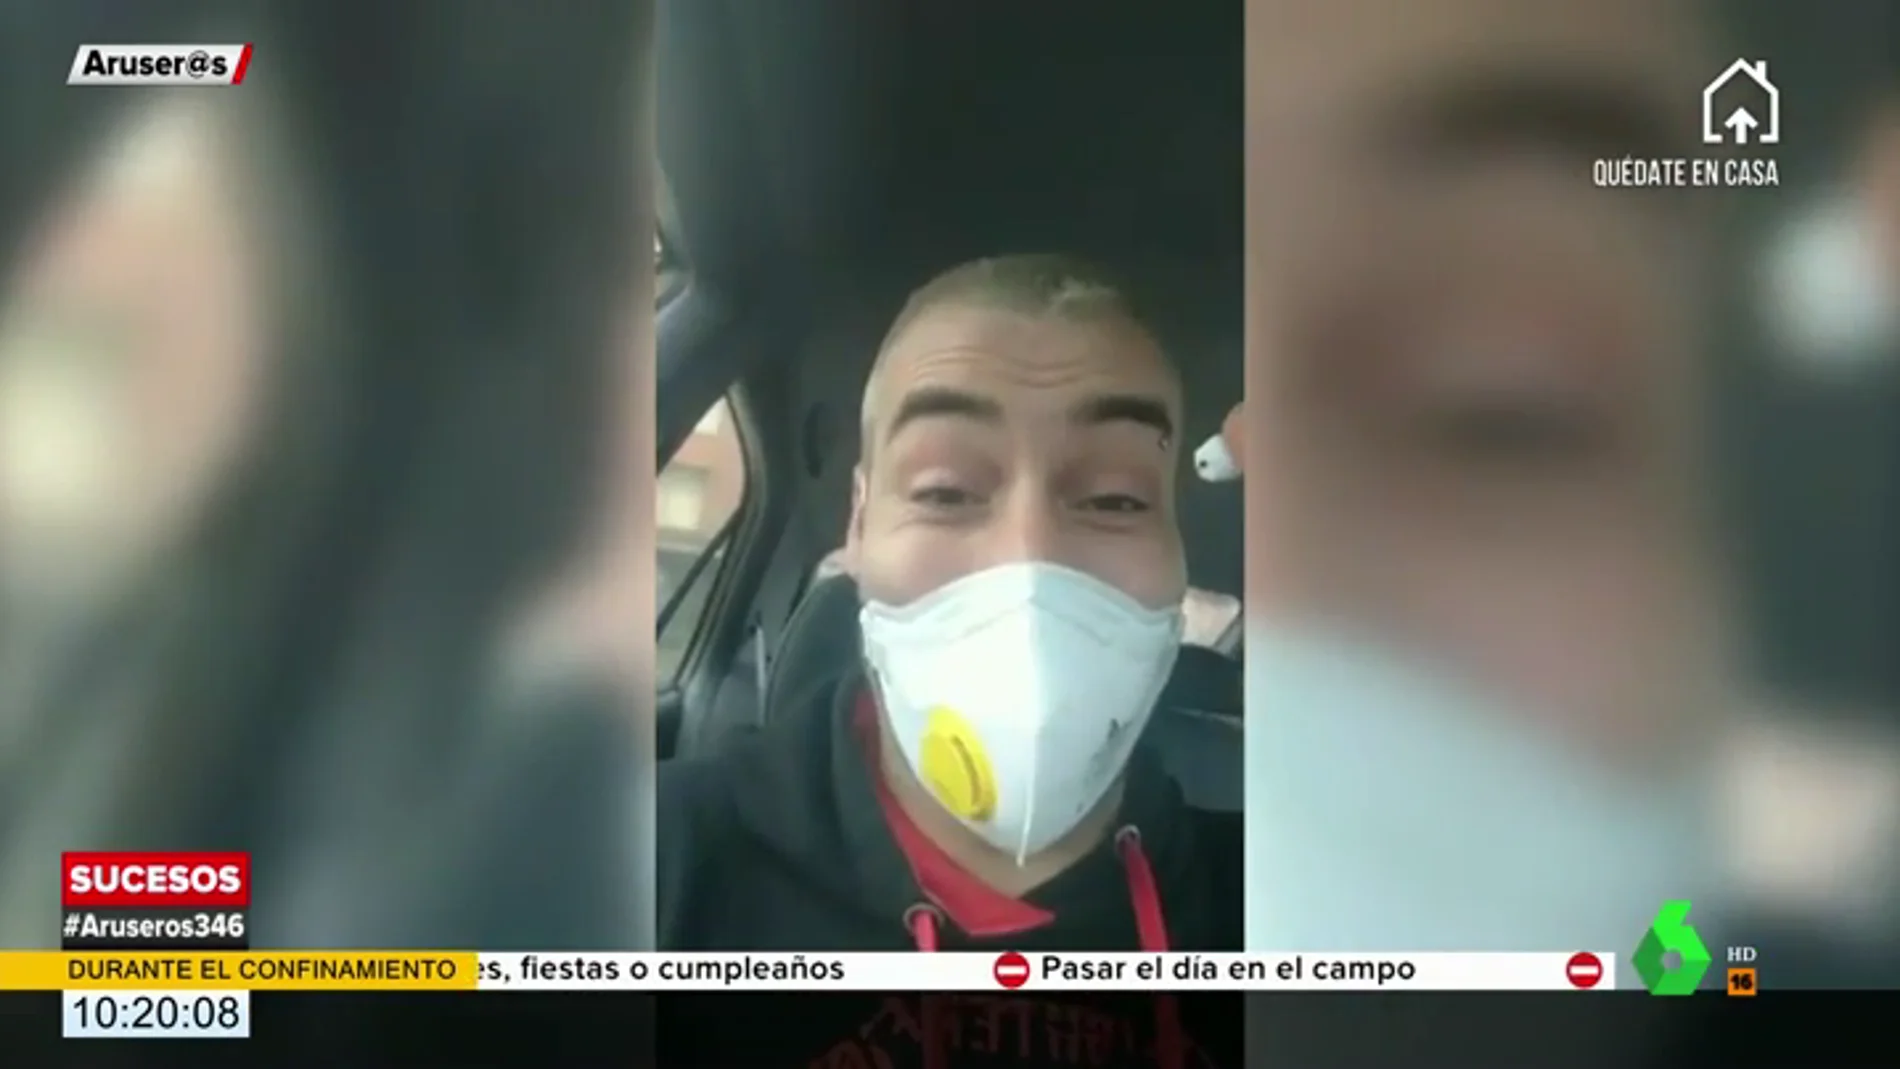 Un joven alardea en un vídeo de burlar a la Policía escondiendo droga en su mascarilla